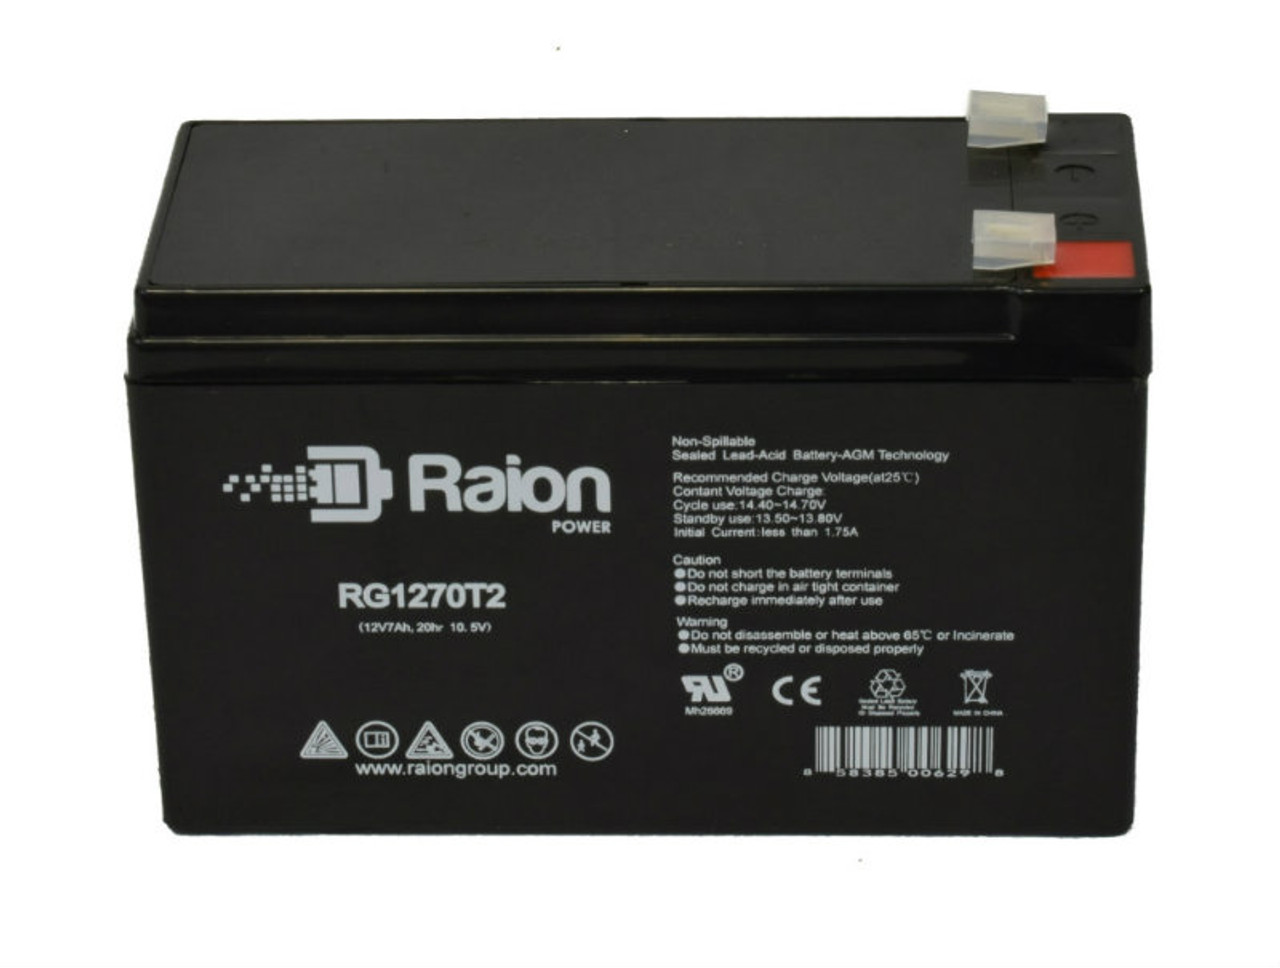 Raion Power RG1270T1 12V 7Ah Lead Acid Battery for McGaw 9510A Cardiac Output Computer